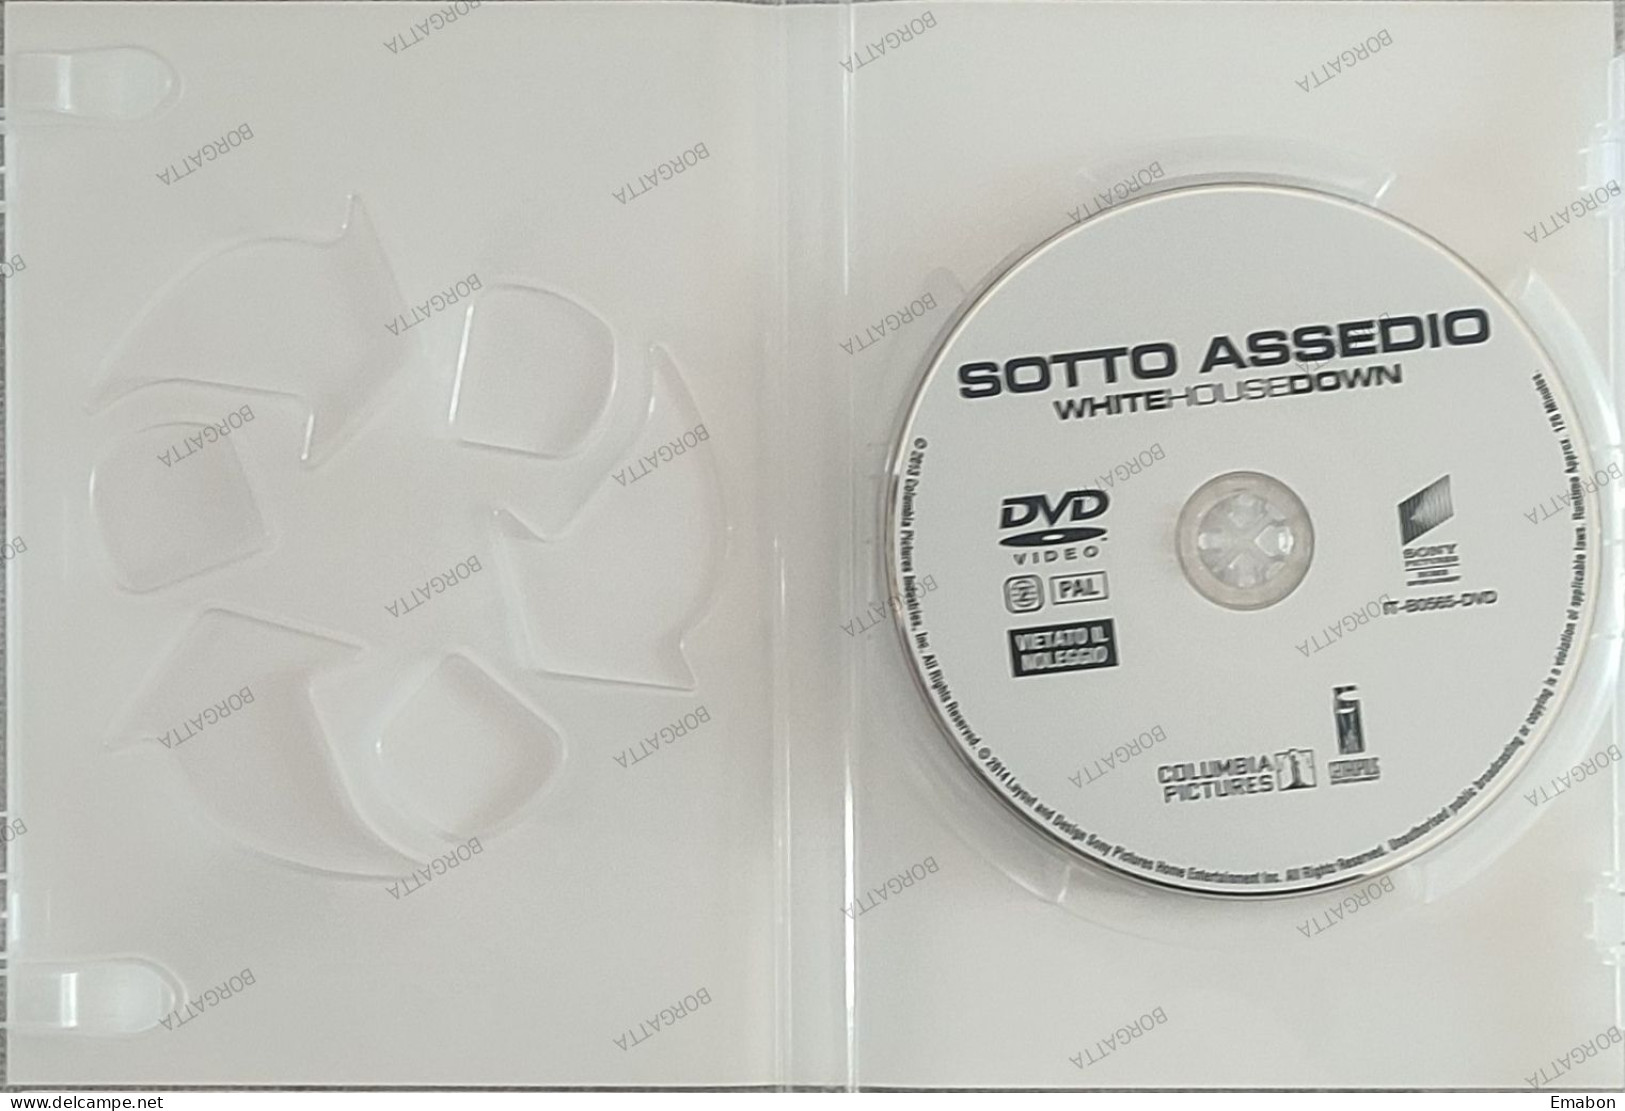 BORGATTA - AZIONE- Dvd SOTTO ASSEDIO WHITE HOUSE DOWN - PAL 2  - SONY 2014 - USATO In Buono Stato - Action, Aventure